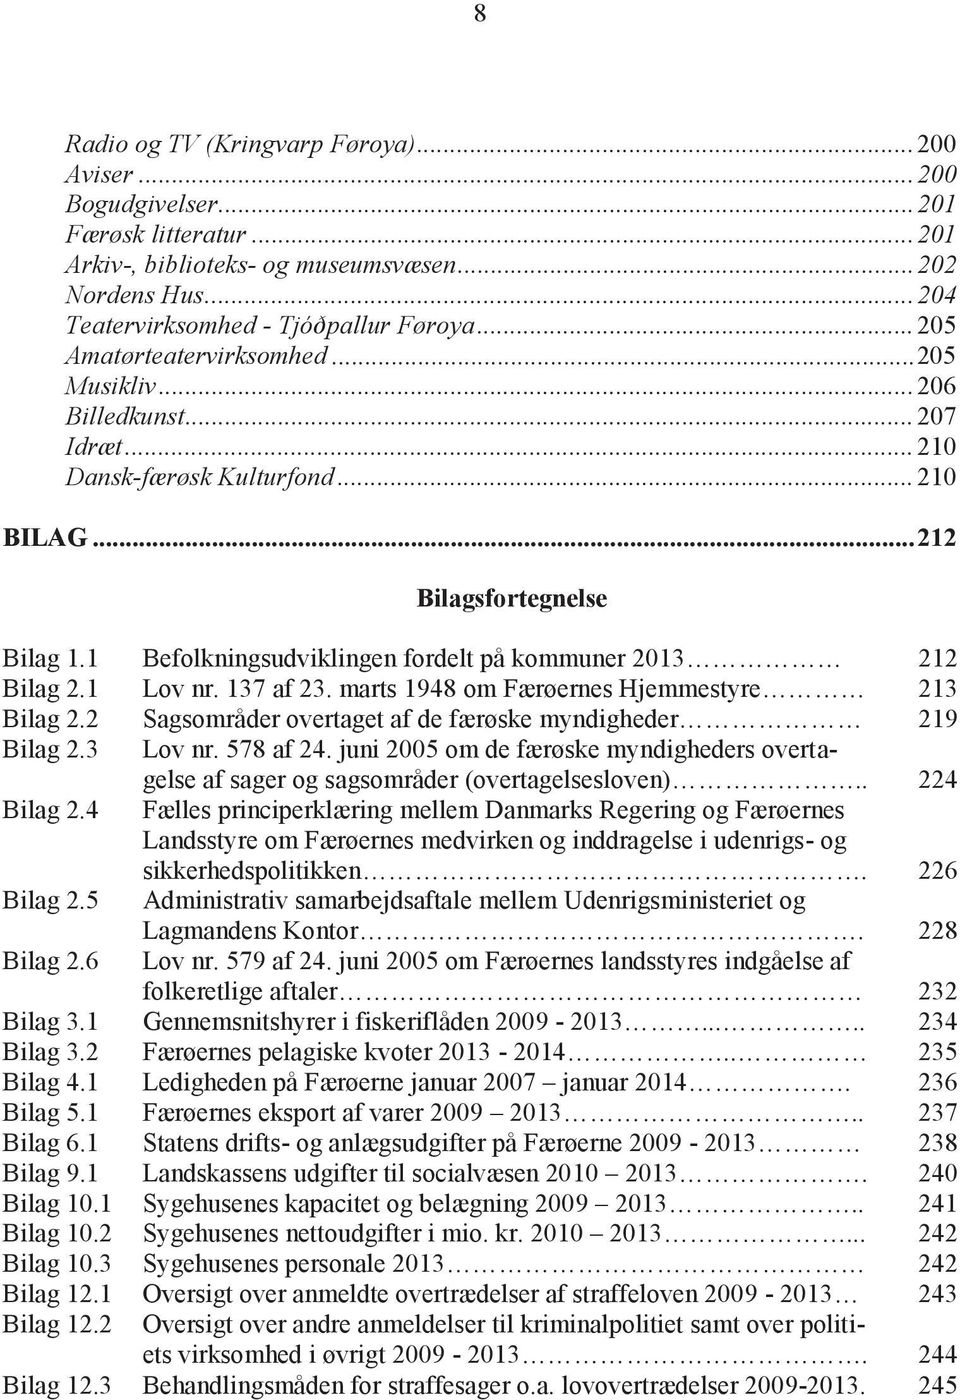 1 Befolkningsudviklingen fordelt på kommuner 2013 212 Bilag 2.1 Lov nr. 137 af 23. marts 1948 om Færøernes Hjemmestyre 213 Bilag 2.2 Sagsområder overtaget af de færøske myndigheder 219 Bilag 2.